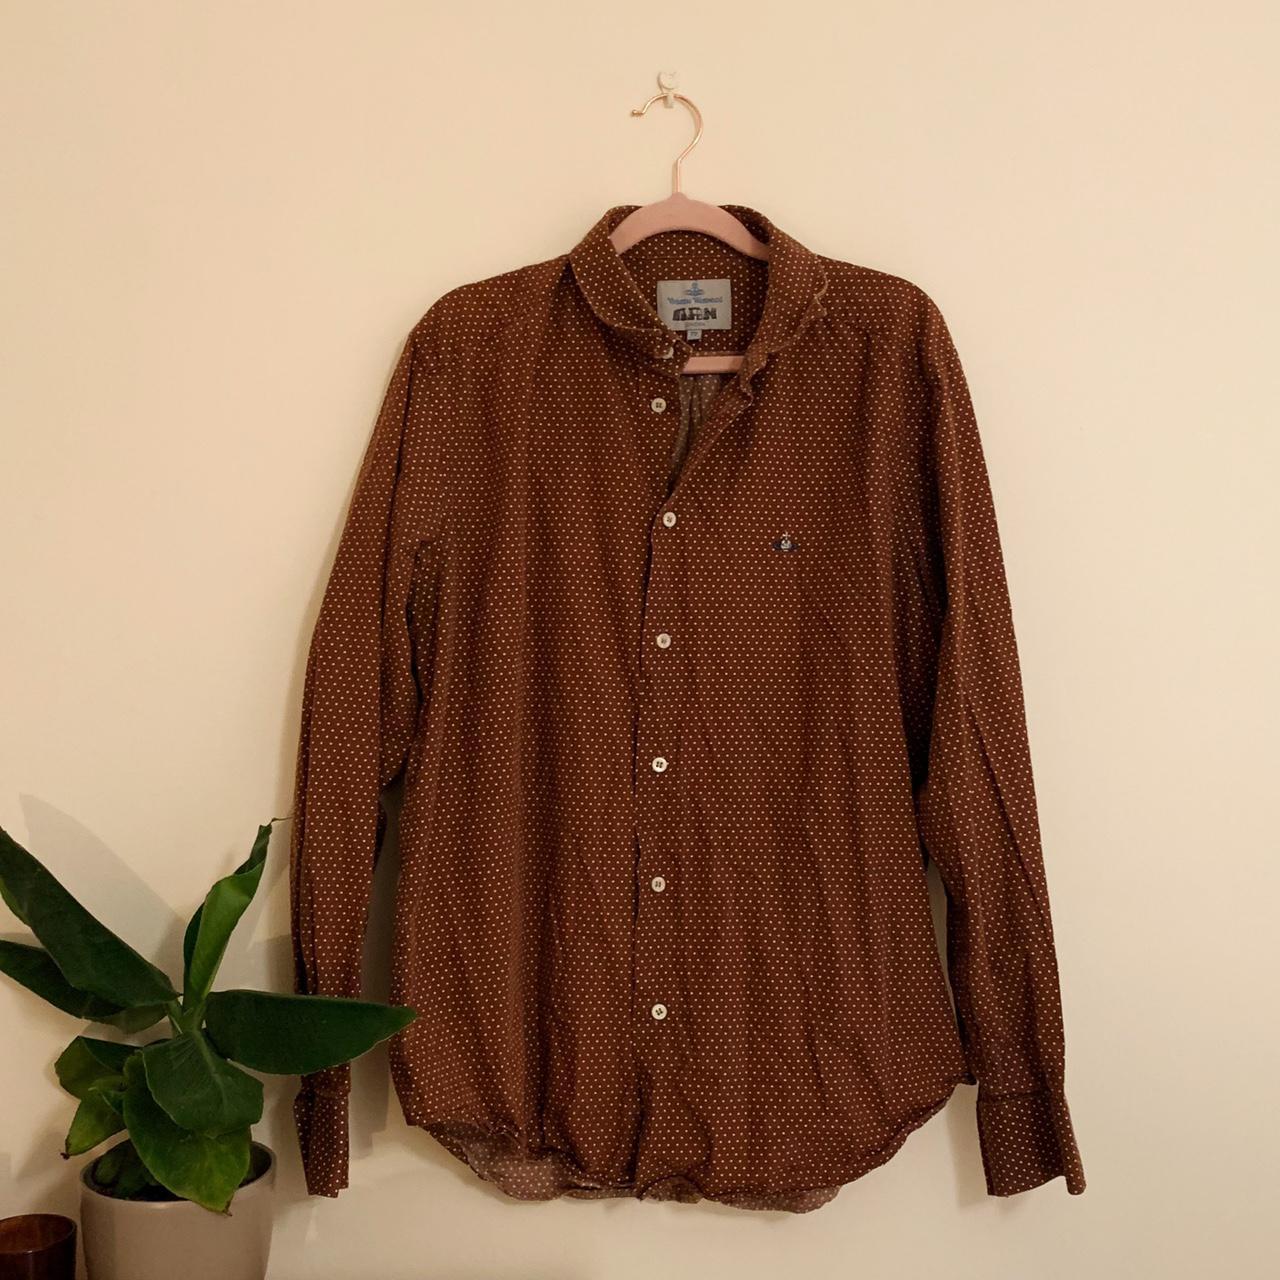 Product Image 1 - vintage vivienne westwood shirt, brown